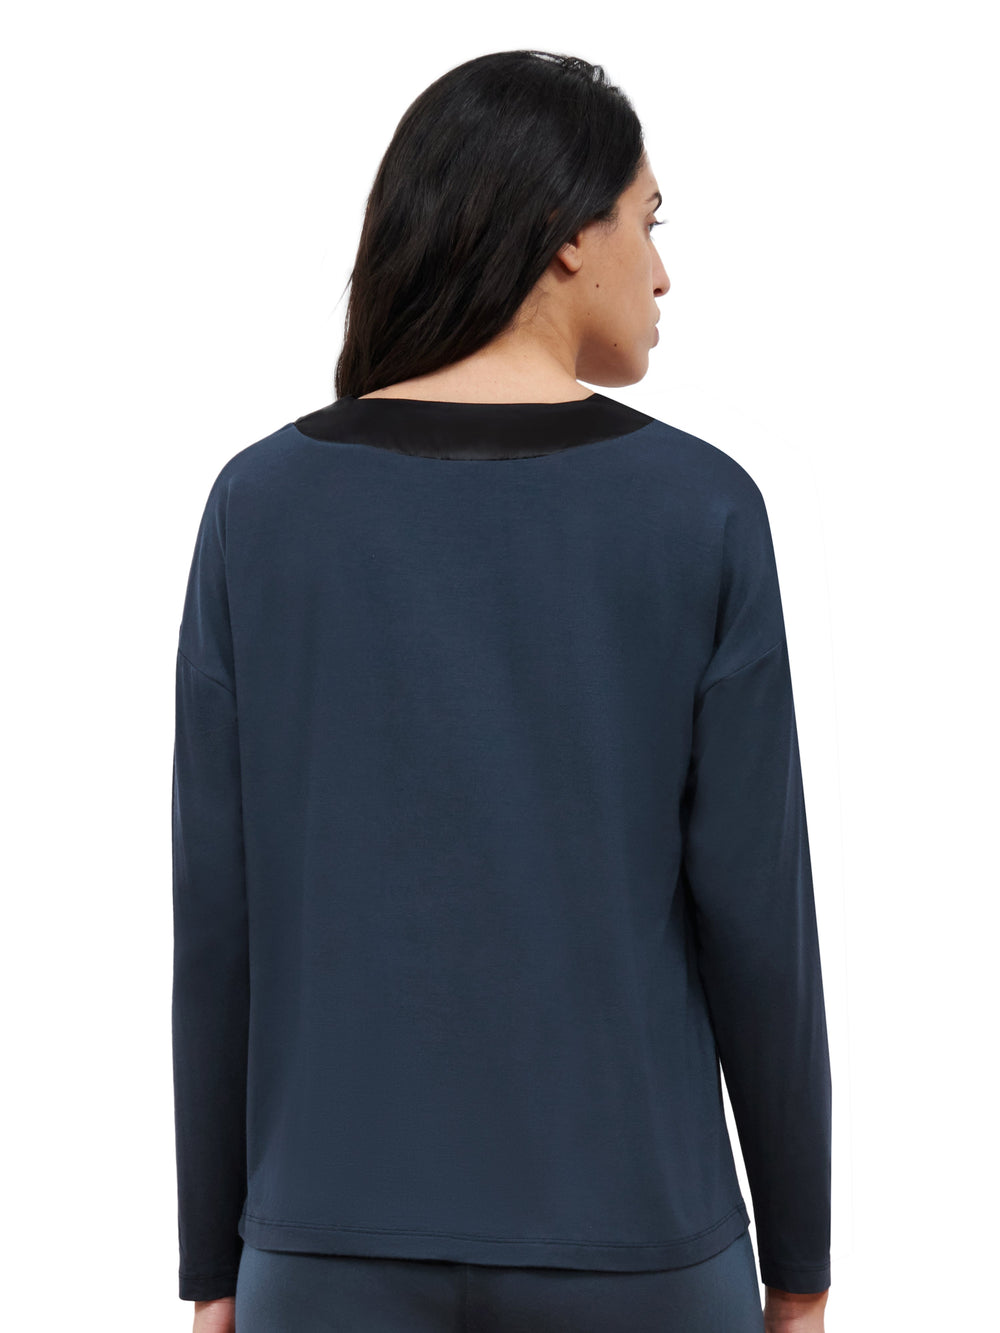 Femilet - T-Shirt Lizzy Haut de Pyjama Bleu Foncé Marine Femilet